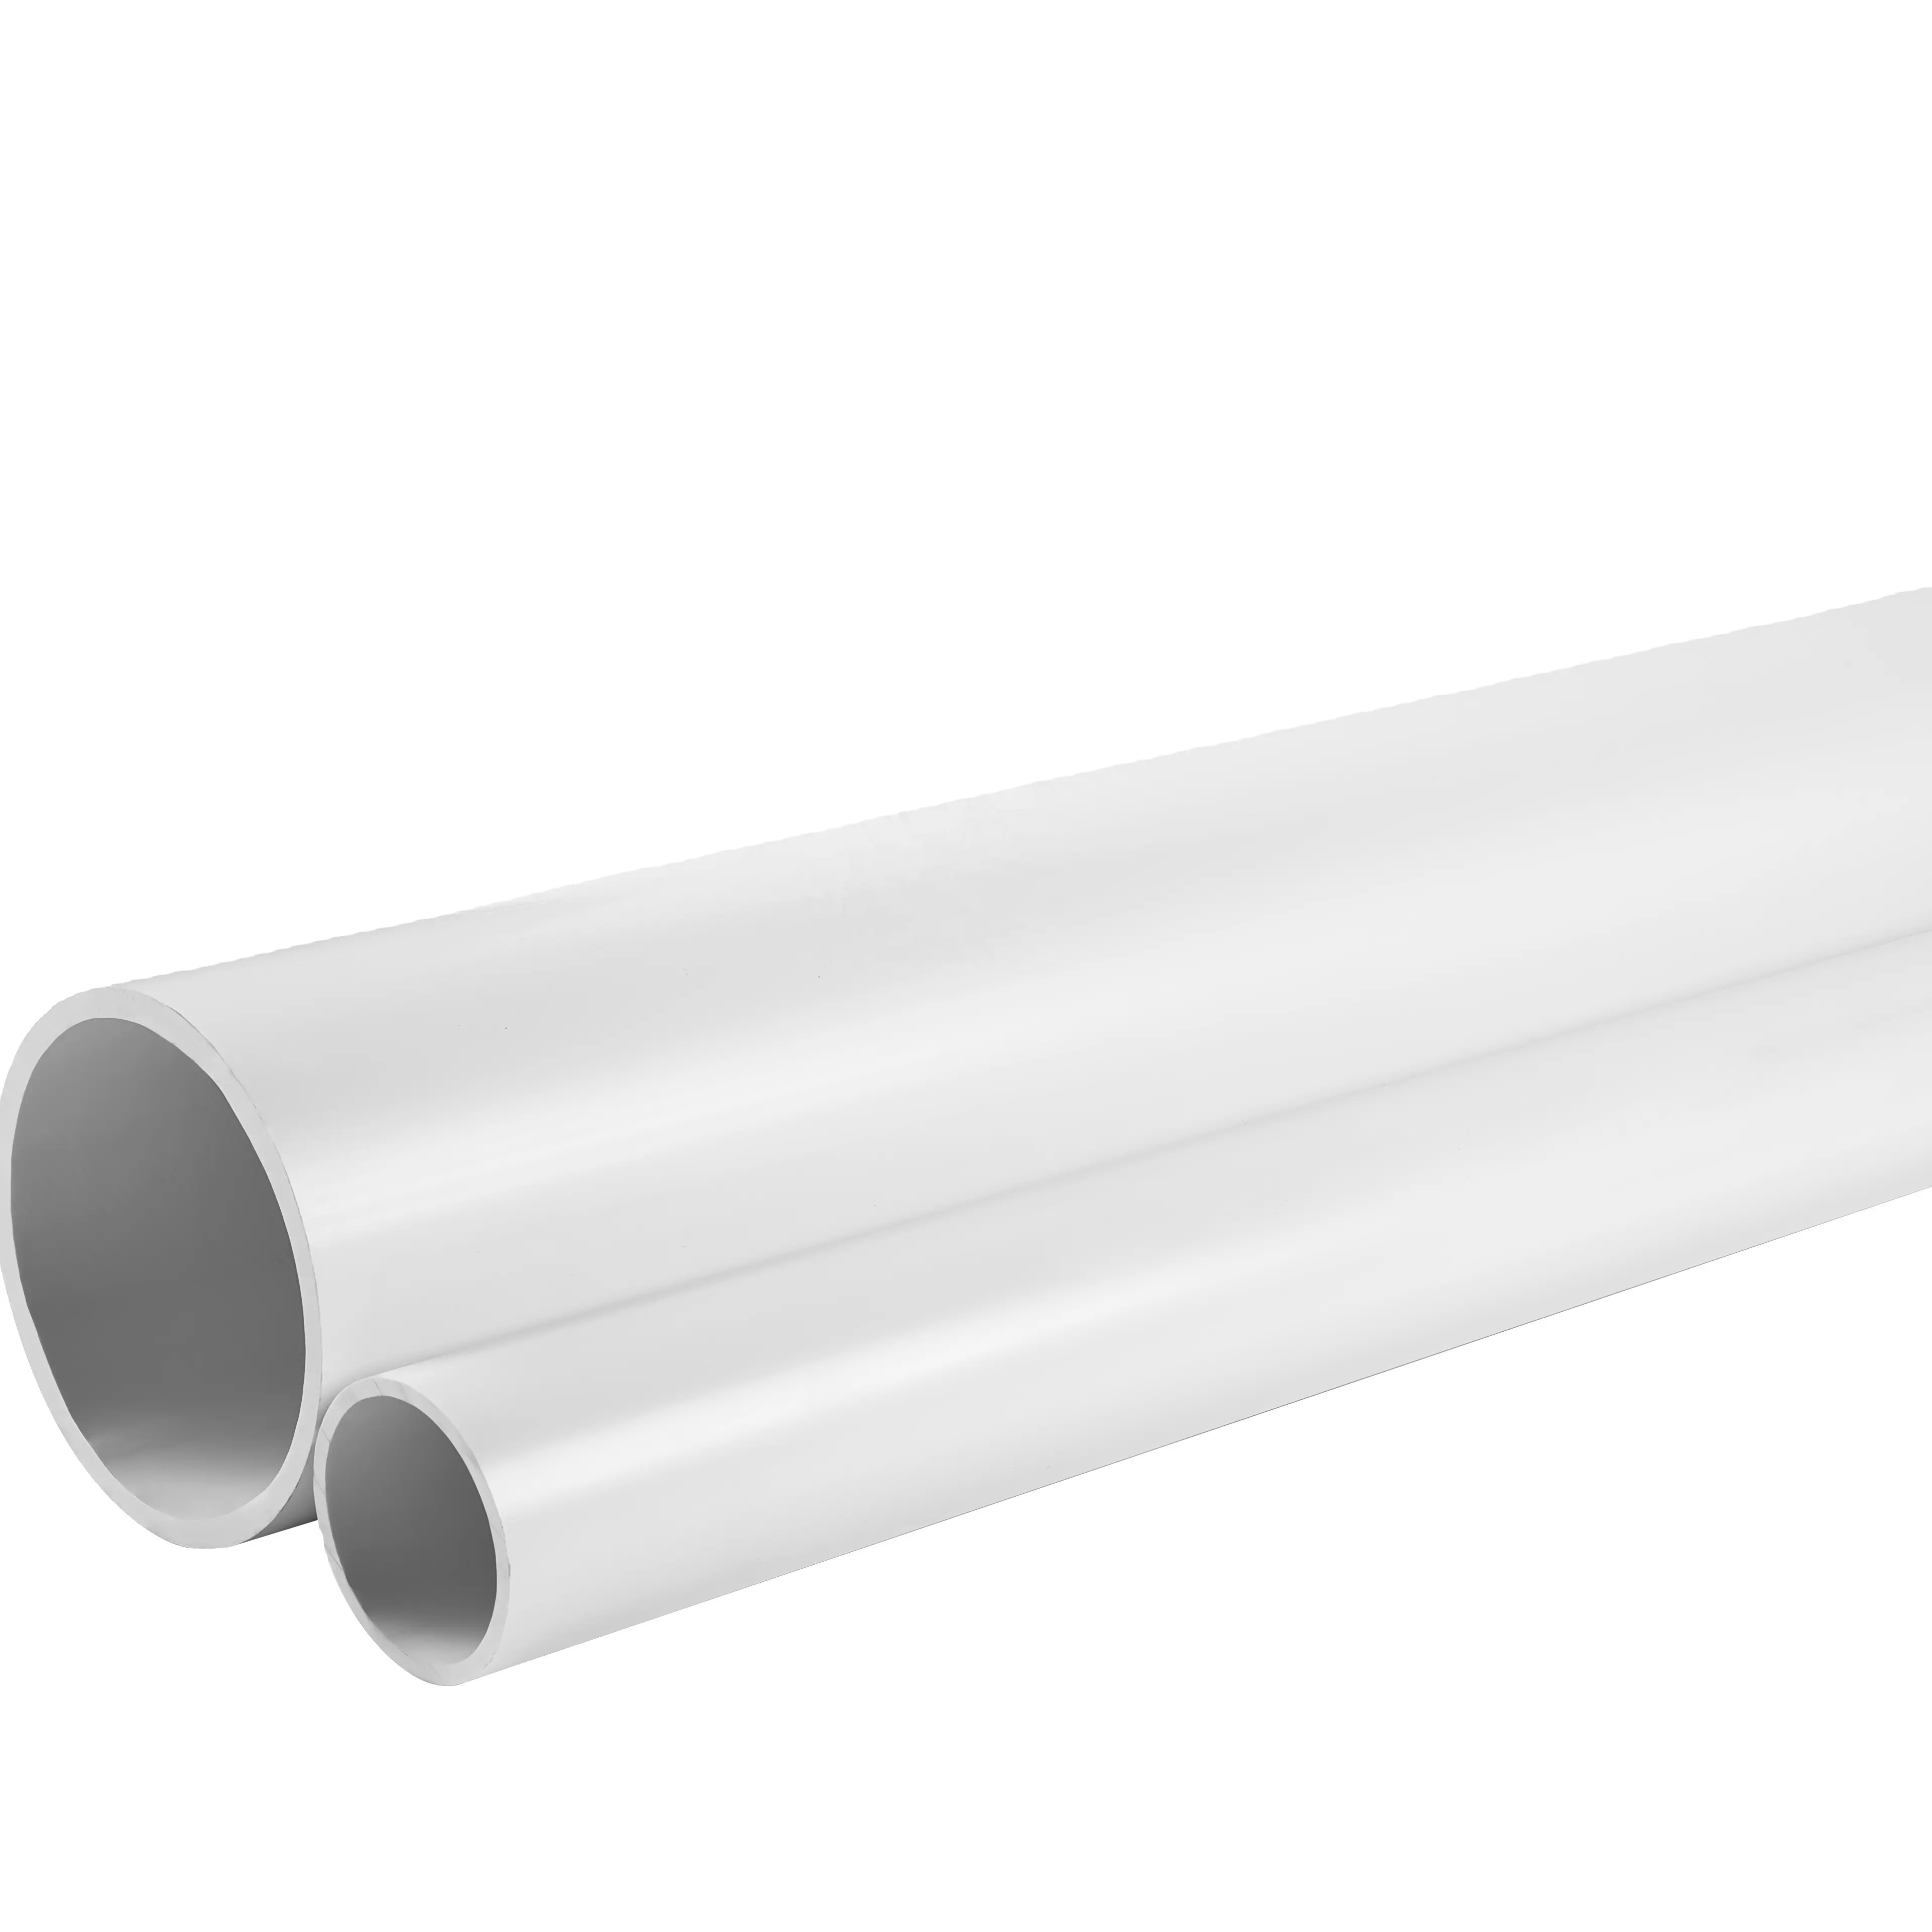 ASTM PVC DWV drenagem encanamento água tubos Sch 80 tubulação